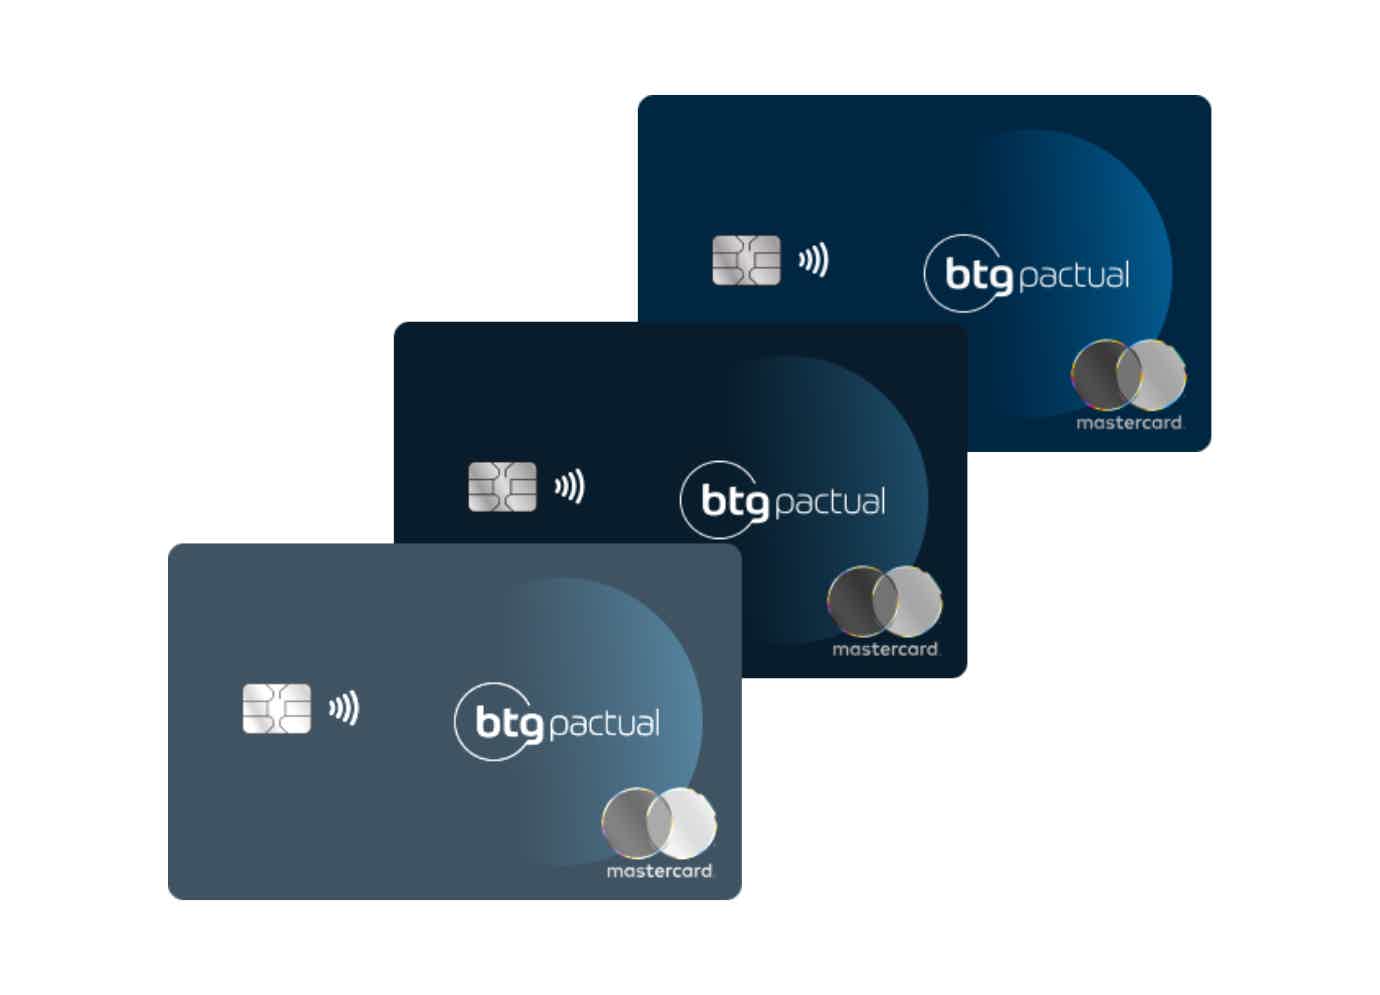 Conheça os principais cartões do banco! Fonte: BTG Pactual.